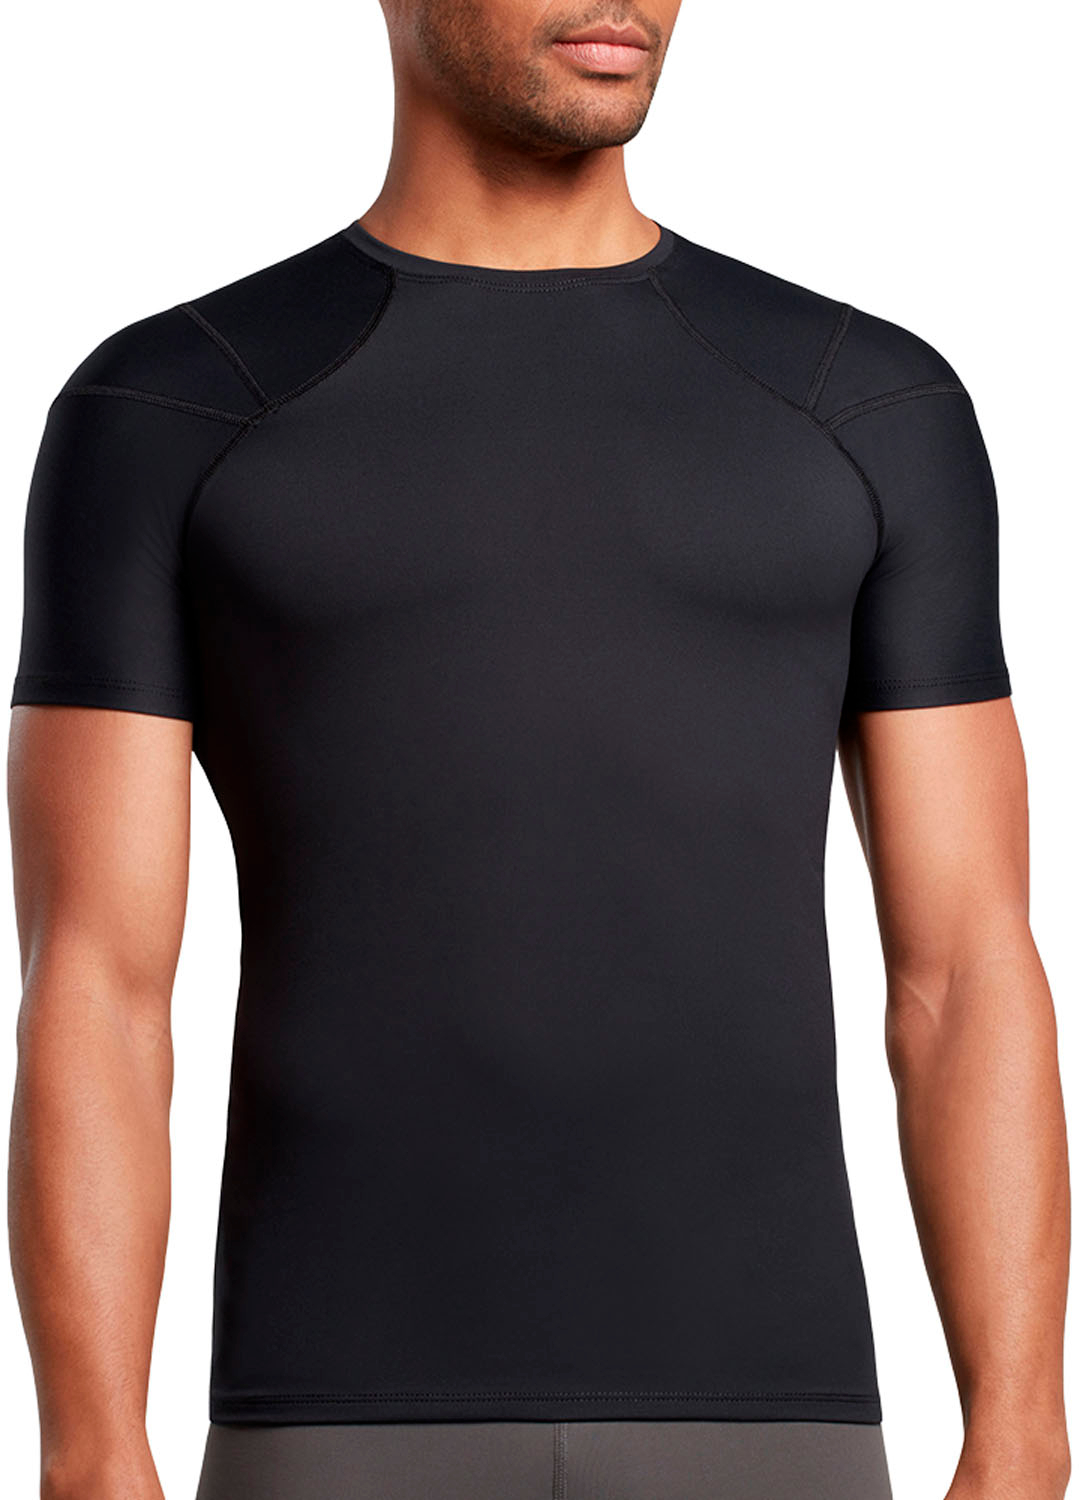 Shoulder Support Shirt | Men's Long Sleeve